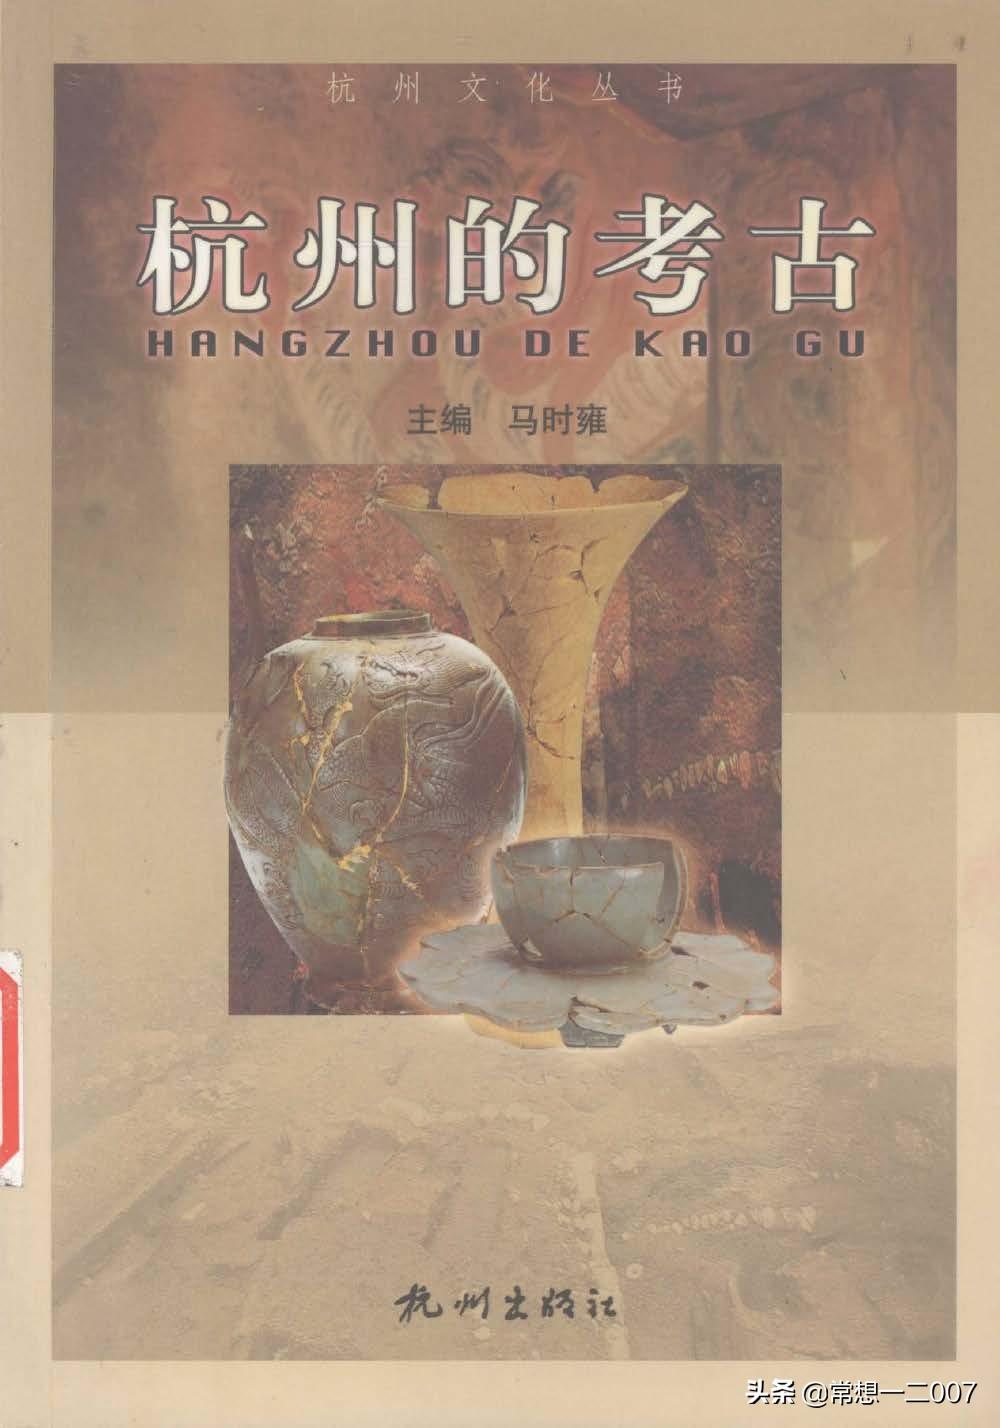 日享一书ZZh01《杭州的考古》